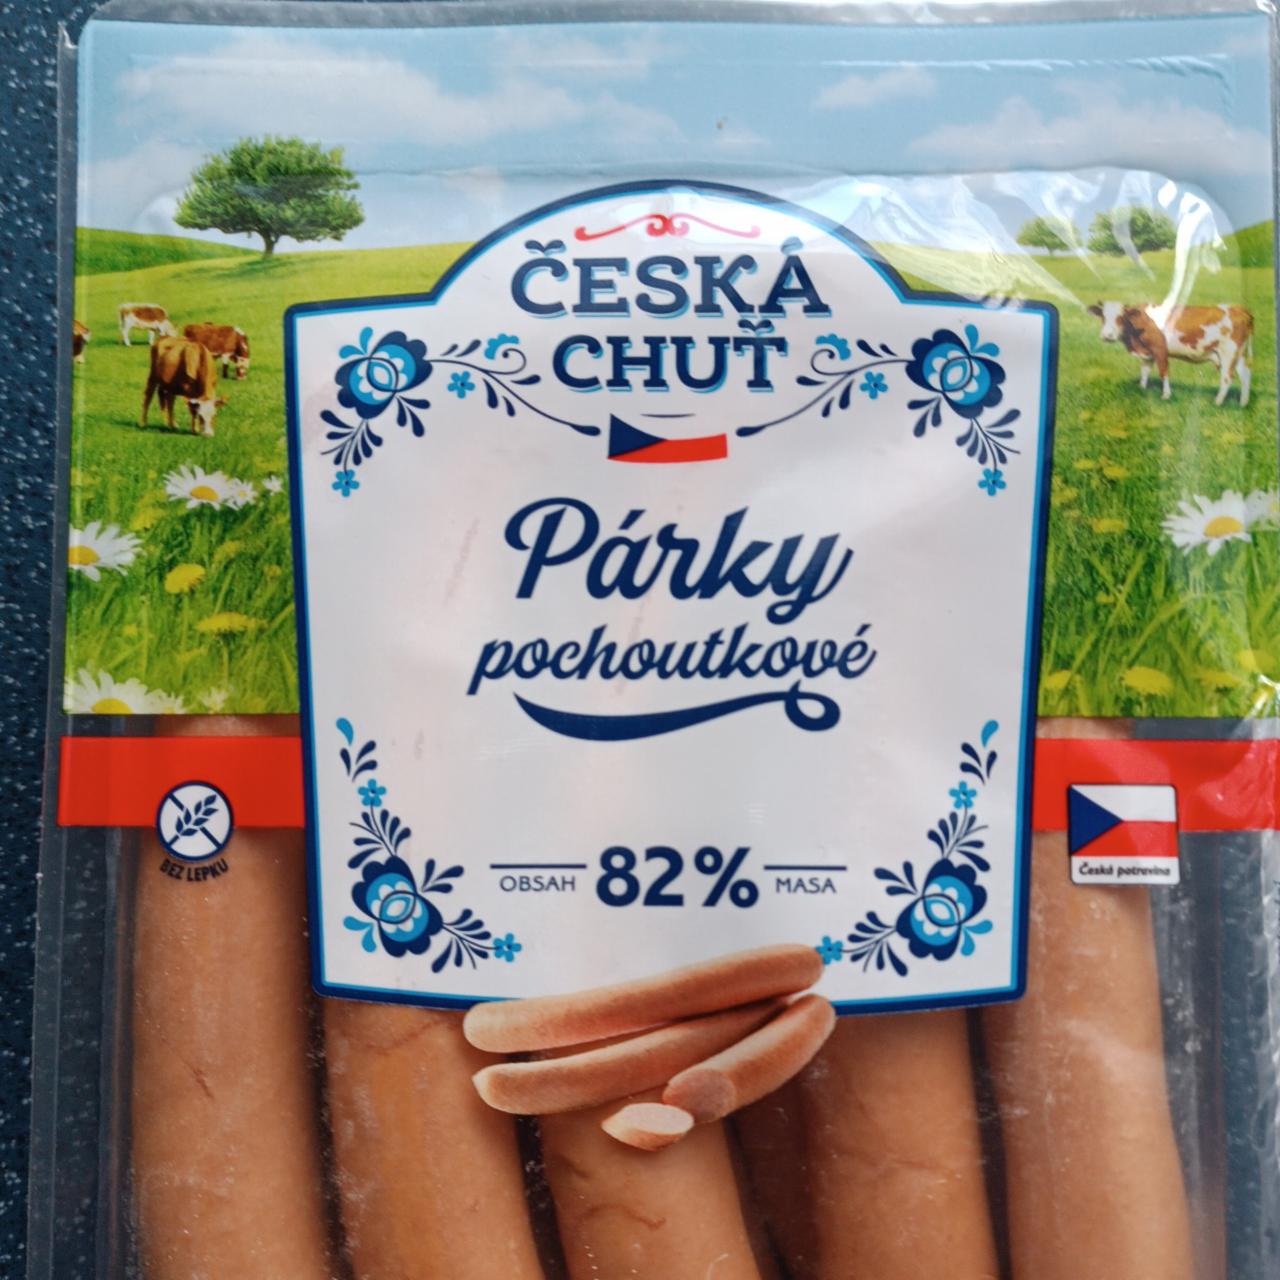 Fotografie - Párky pochoutkové 82% masa Česká chuť